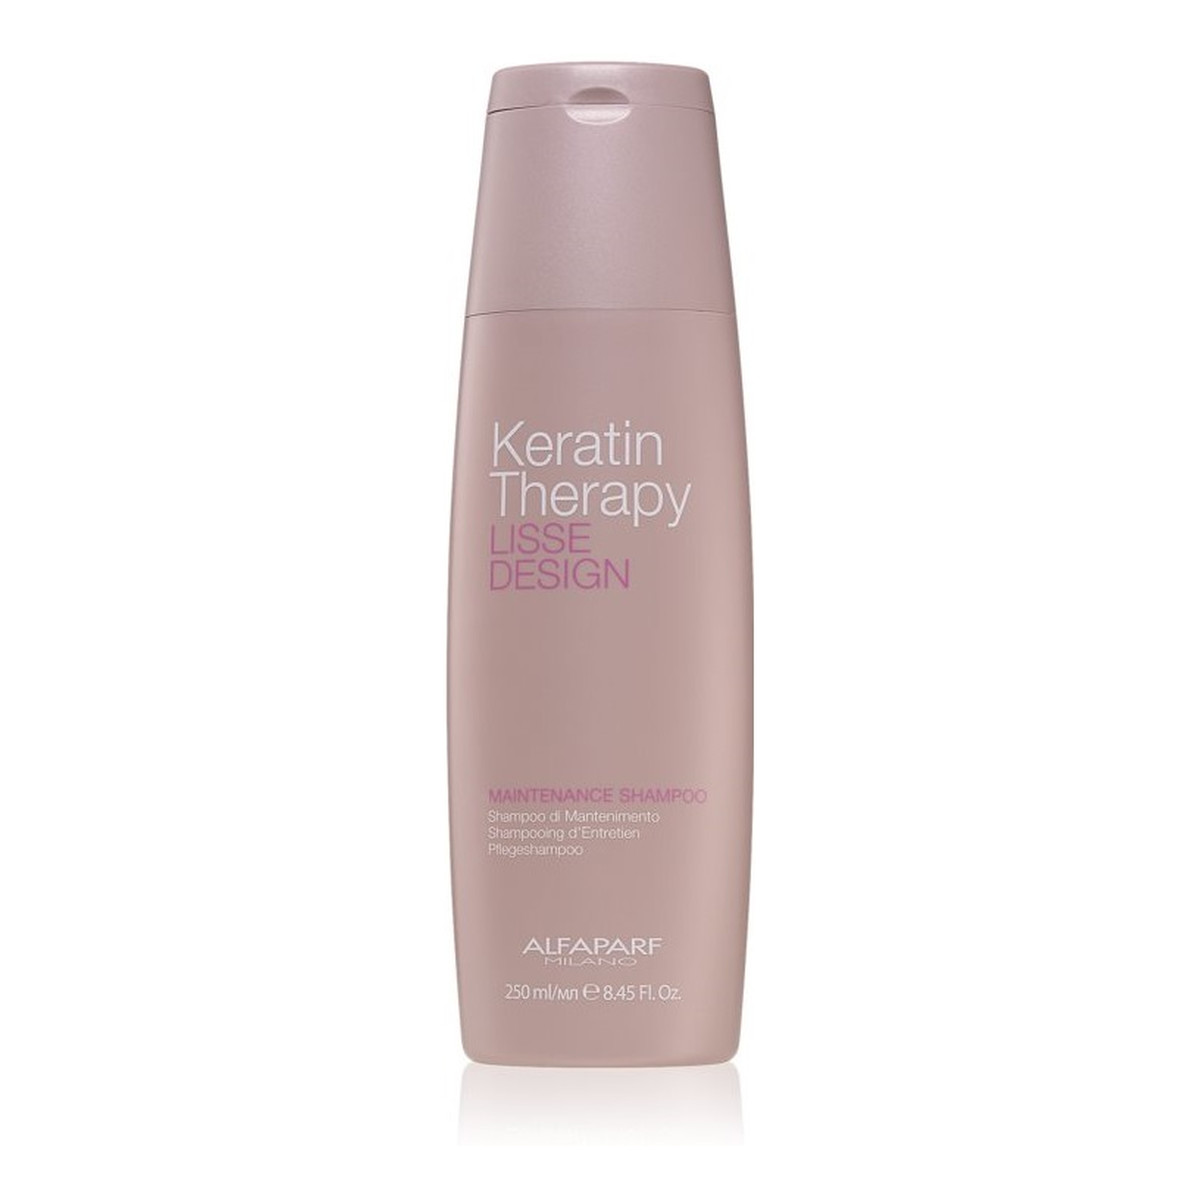 Alfaparf Milano keratin therapy lisse design maintenance shampoo szampon do włosów 250ml